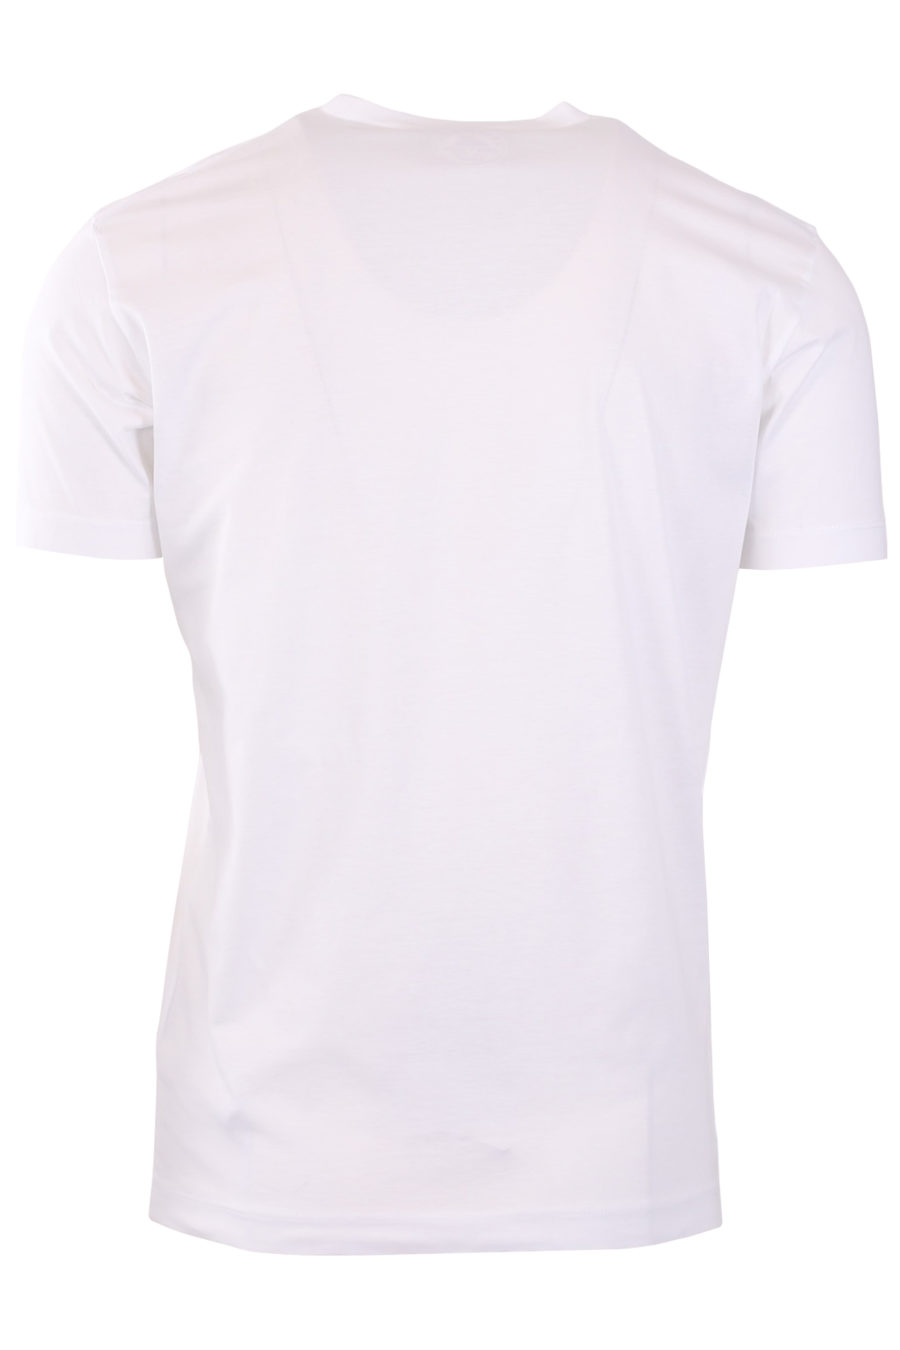 Camiseta blanca con logotipo "Icon" tachado - 29e48581a51a355913044c8fbb6dae556f91998b